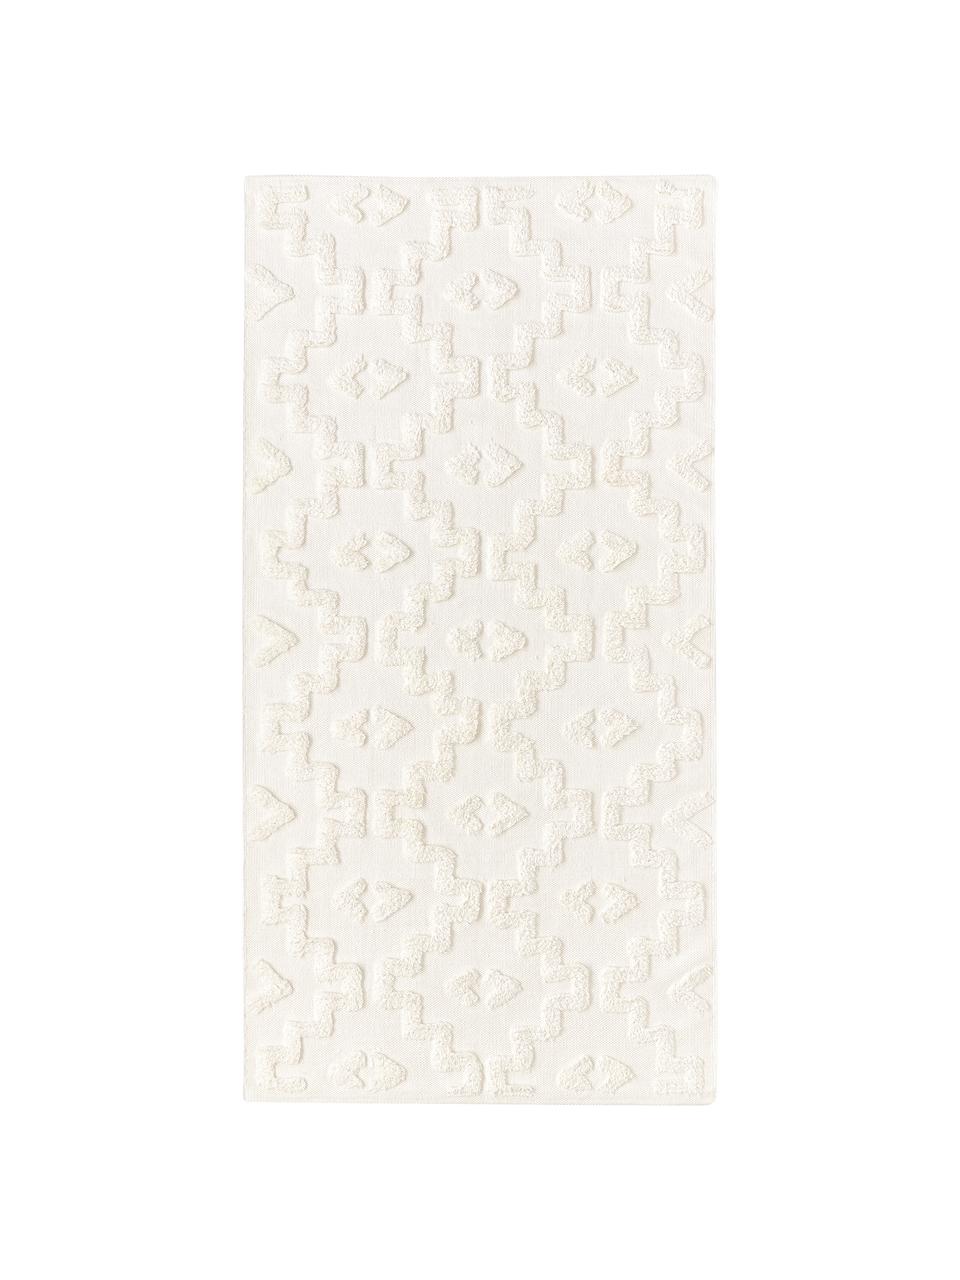 Tappeto in cotone tessuto a mano con struttura in rilievo Idris, 100% cotone, Bianco crema, Larg. 80 x Lung. 150 cm (taglia XS)